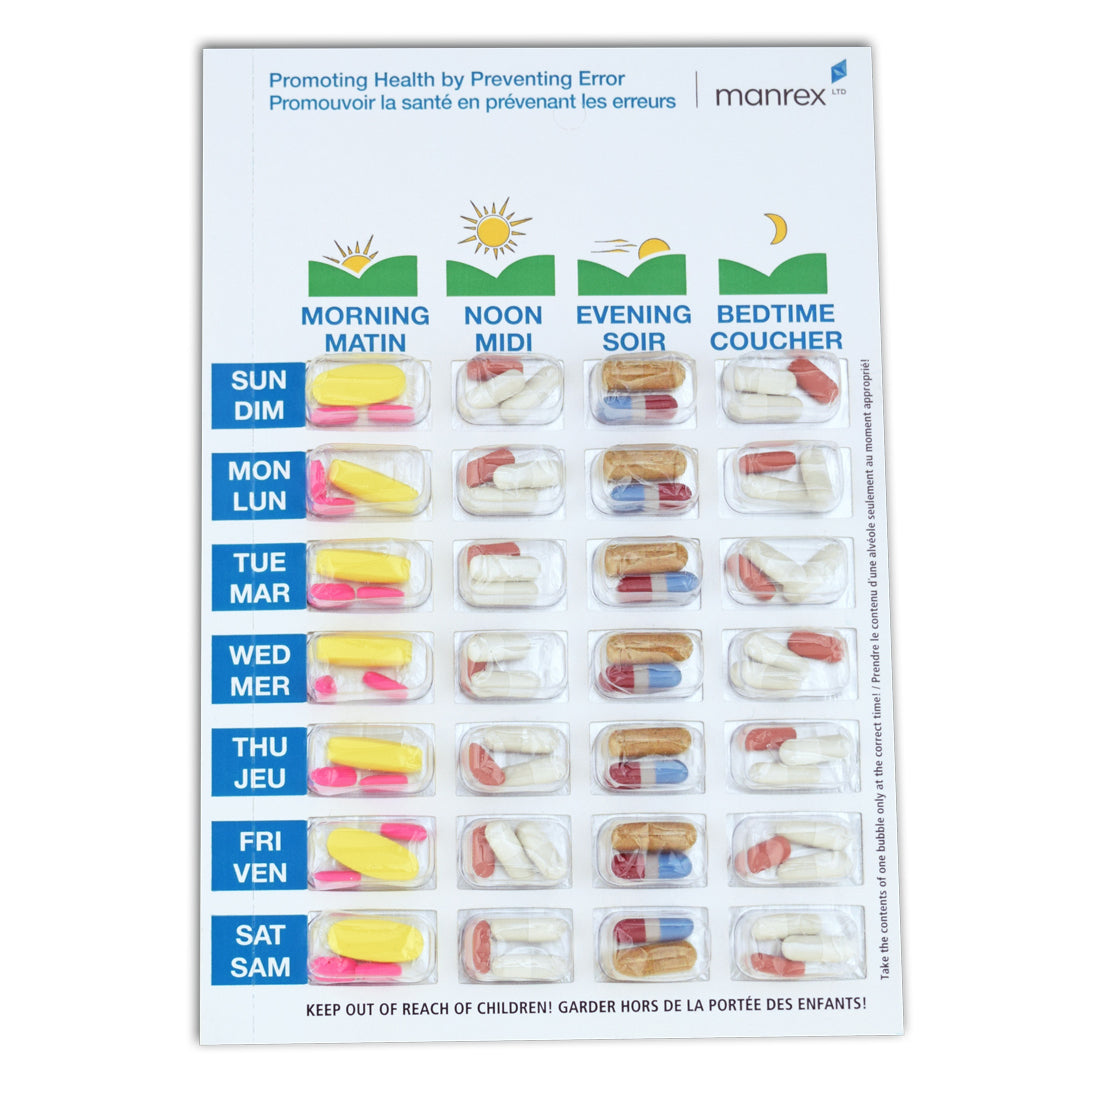 Pill Pak Bi-fold Kit - Pill Blisters